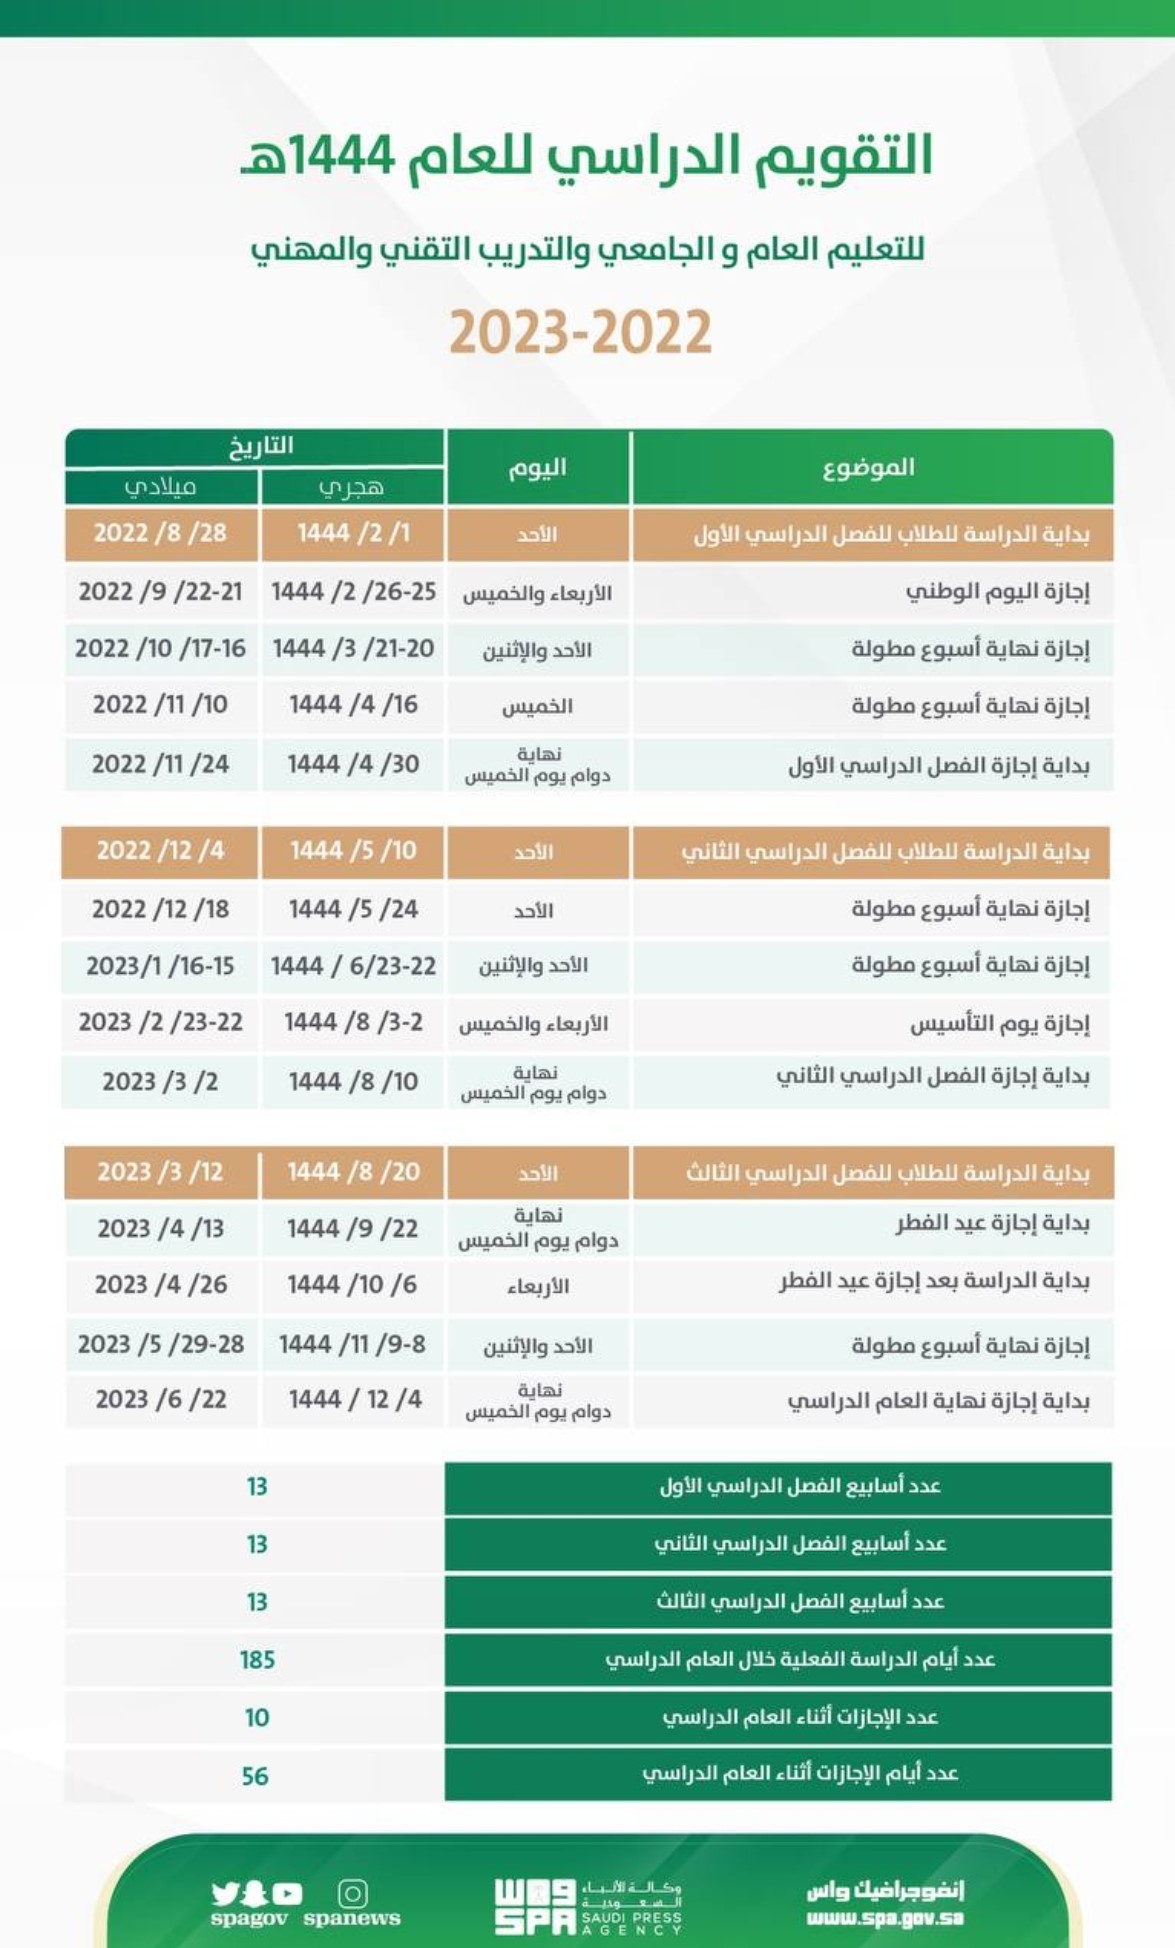 التقويم الدراسي للعام 1444 هـ من وزارة التعليم السعودي